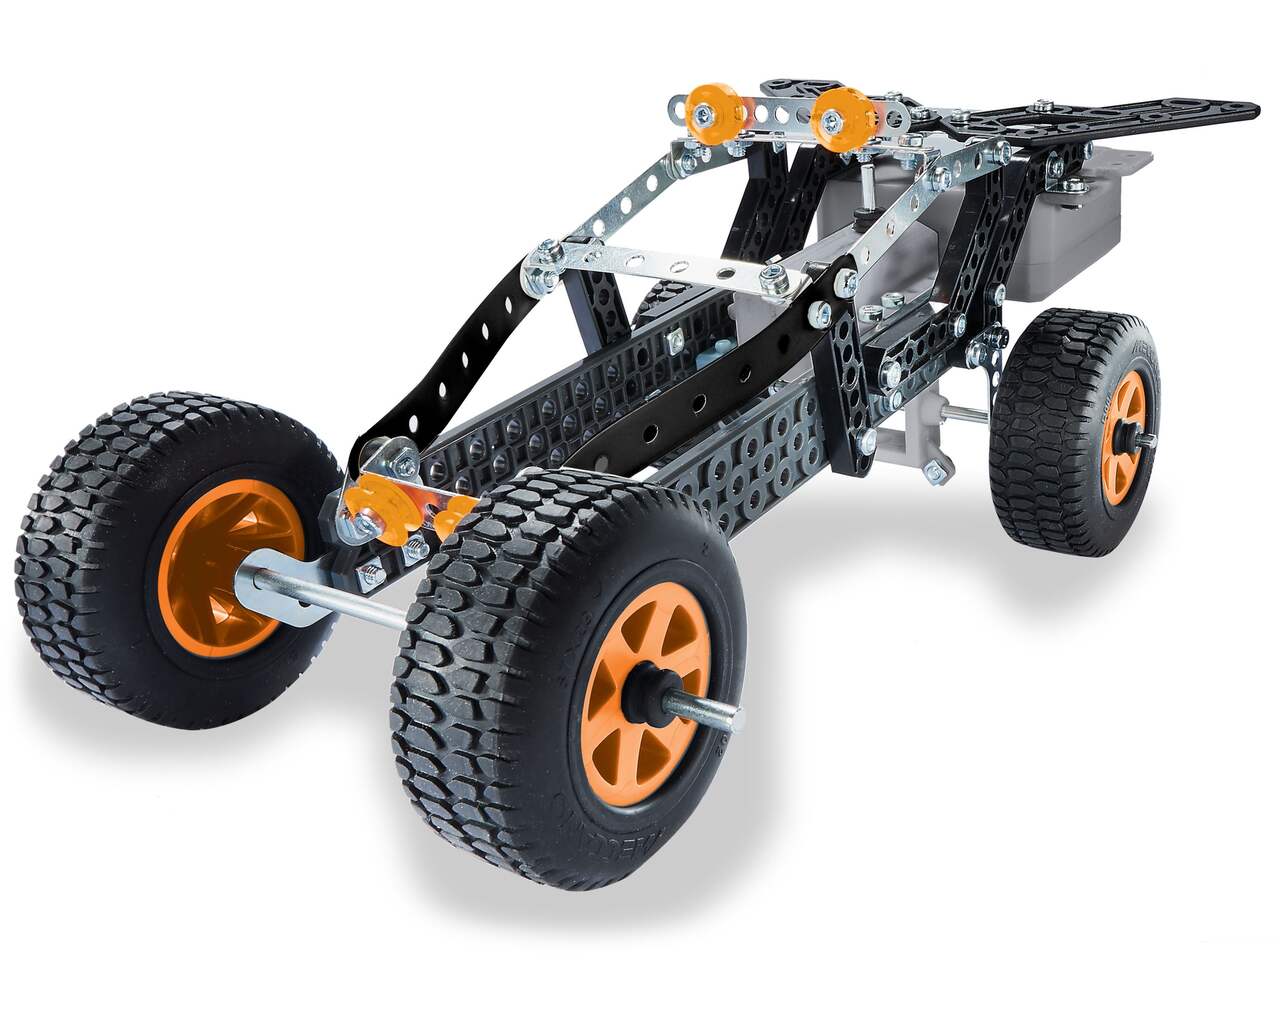 Acheter Meccano, kit de construction de modèles STEM de véhicules de course  10 en 1 avec 225 pièces et de vrais outils, jouets pour enfants à partir de  8 ans